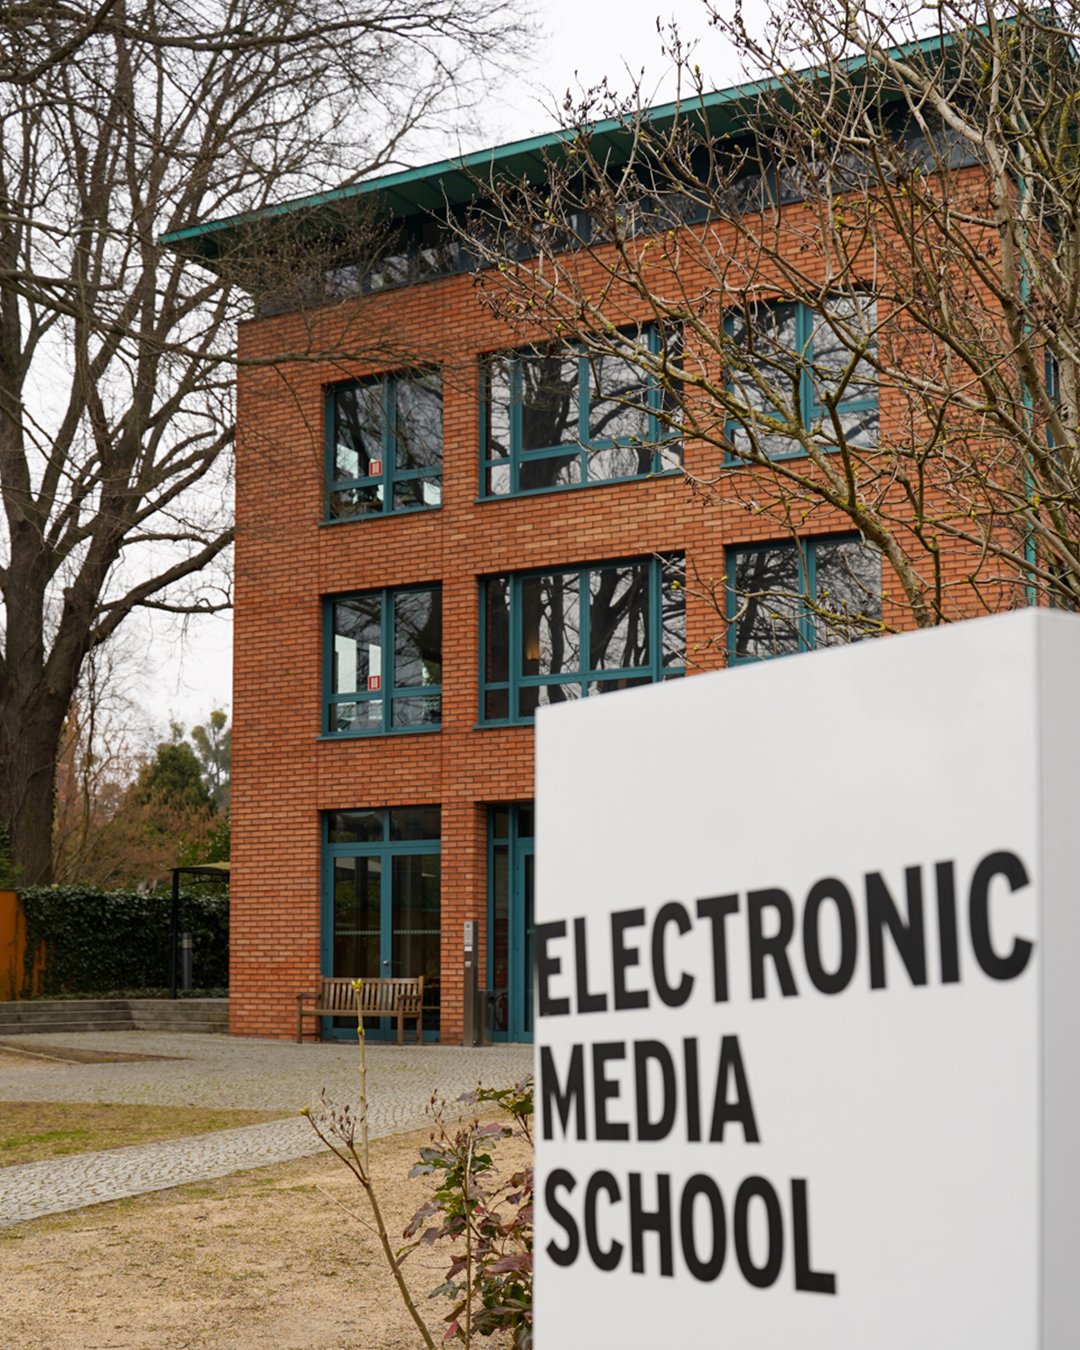 Im Vordergrund weißes Schild mit dem Schriftzug "Electronic Media School", dahinter das ems-Schulgebäude aus Backstein mit grünen Fenstern.